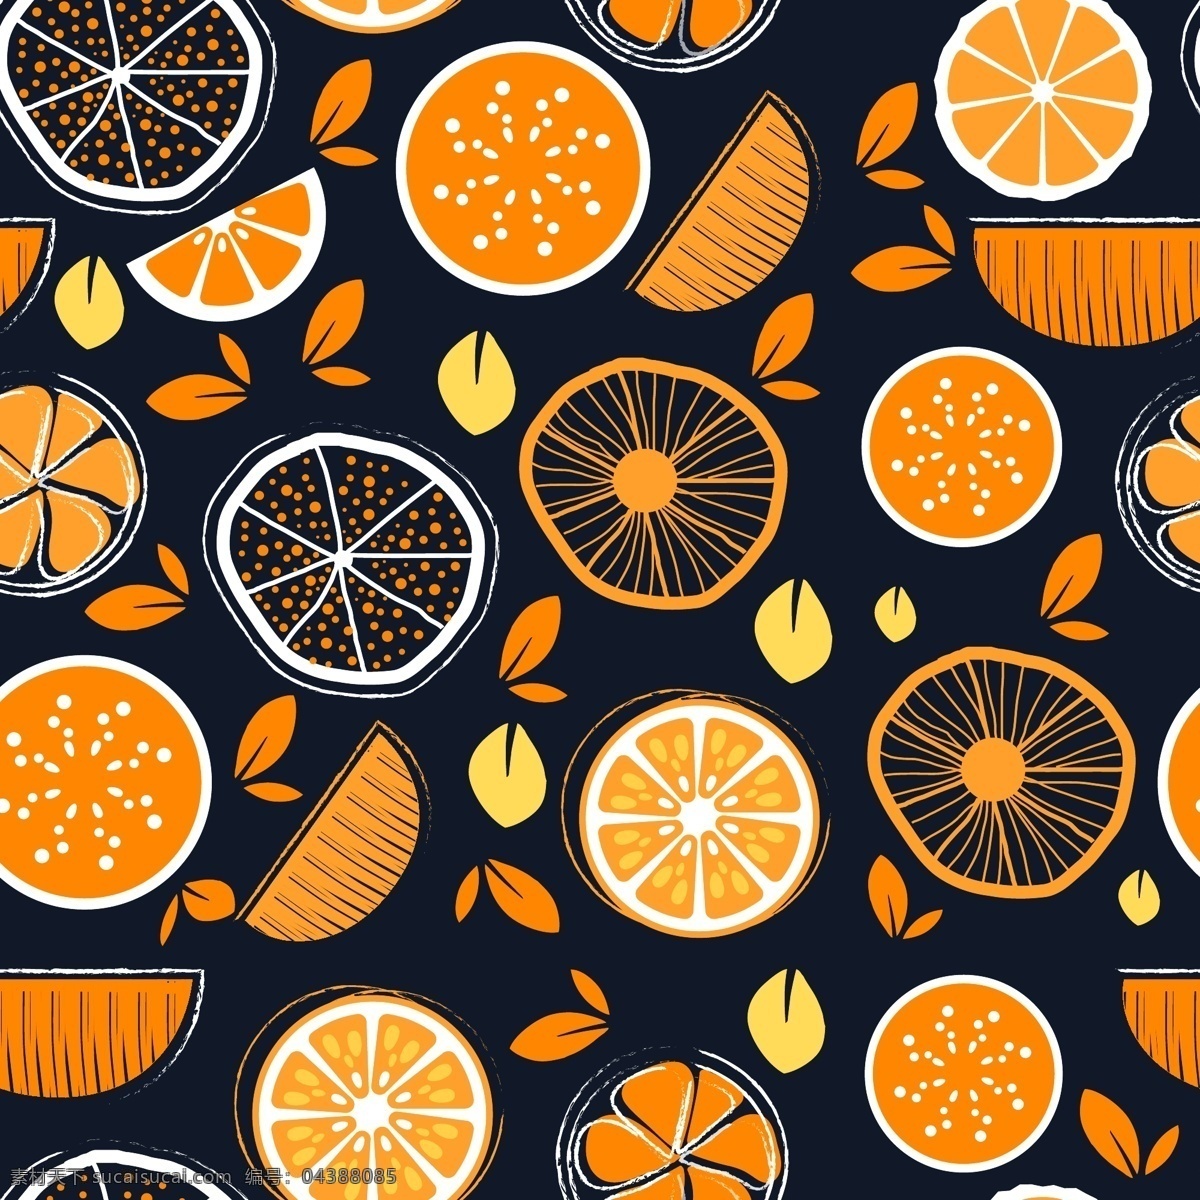 橙子 无缝 背景图片 创意 无缝背景 叶子 水果 切片 矢量 高清图片